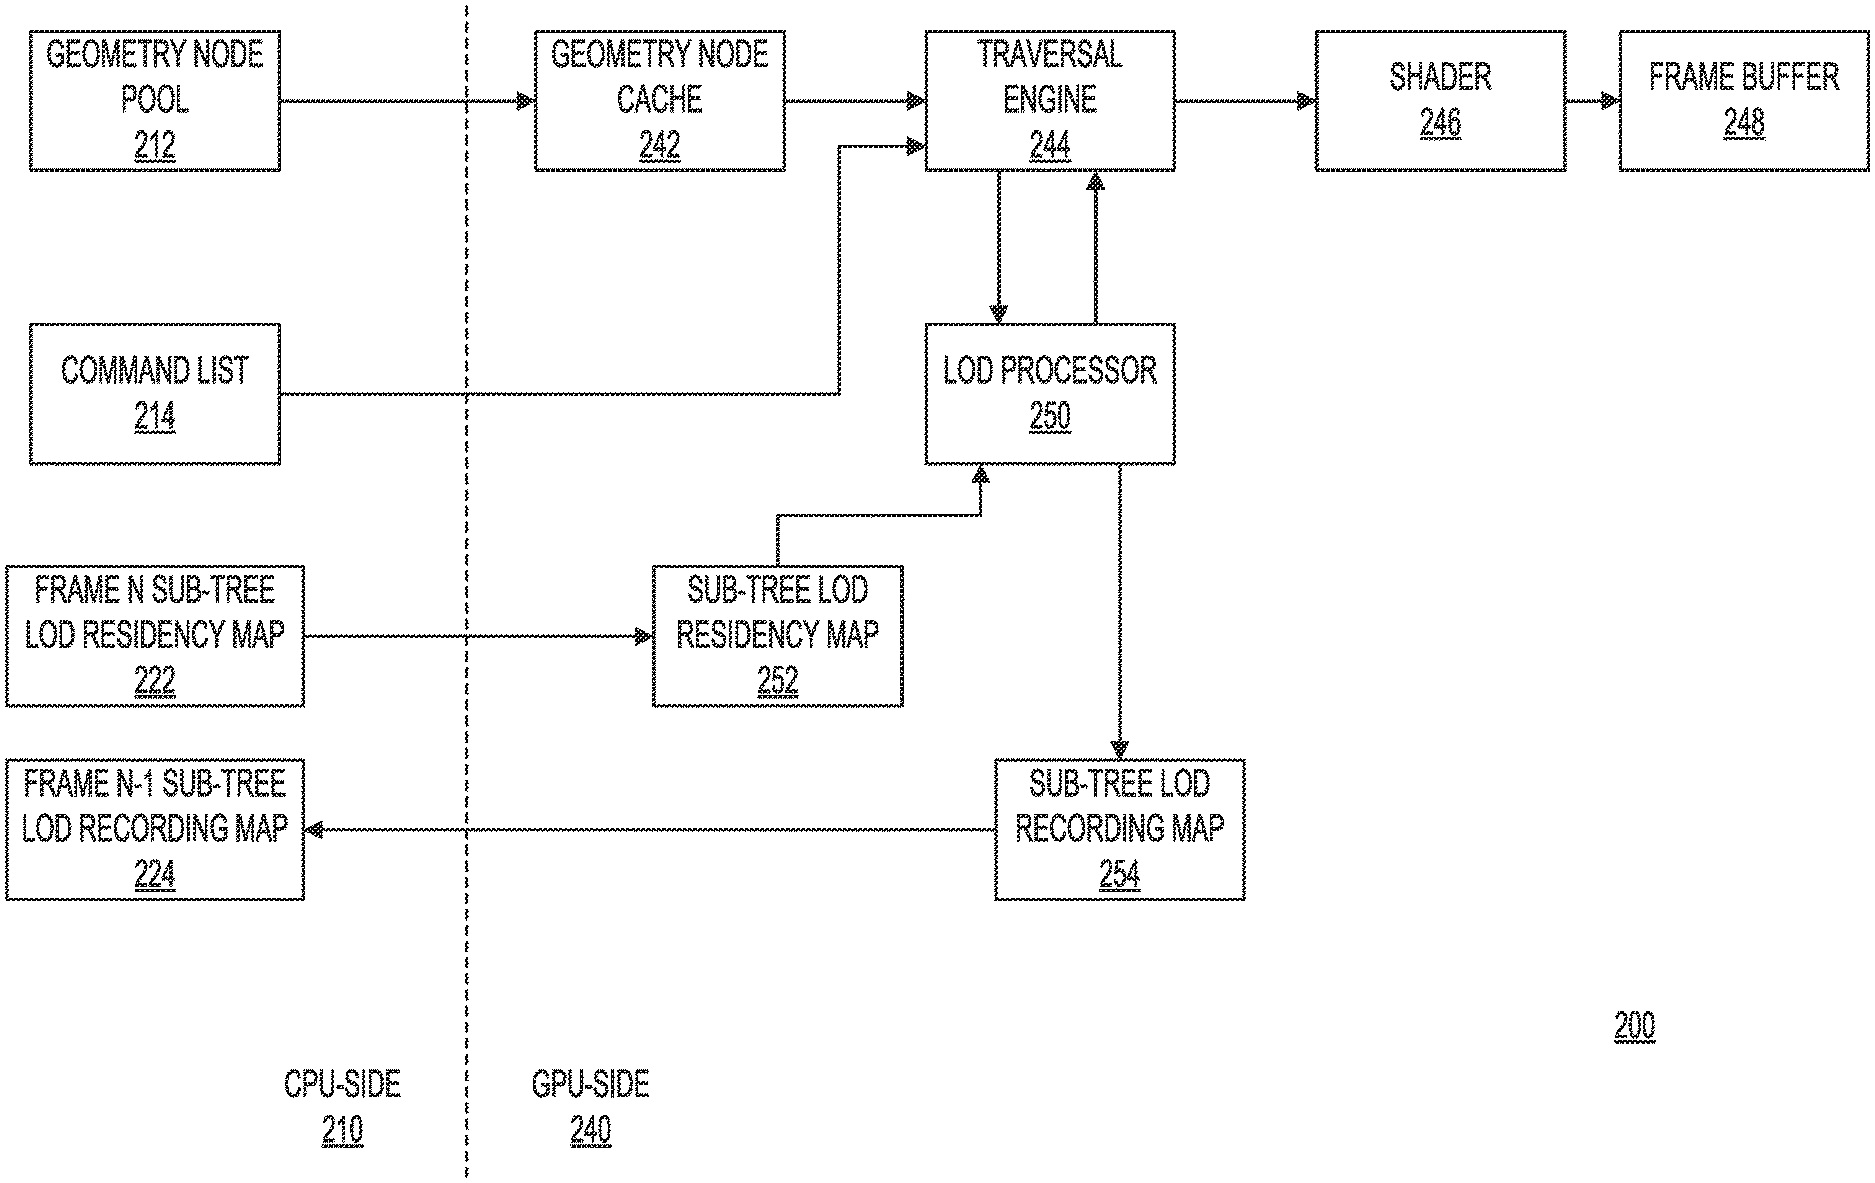 Concepto de patente de ray tracing de Microsoft.